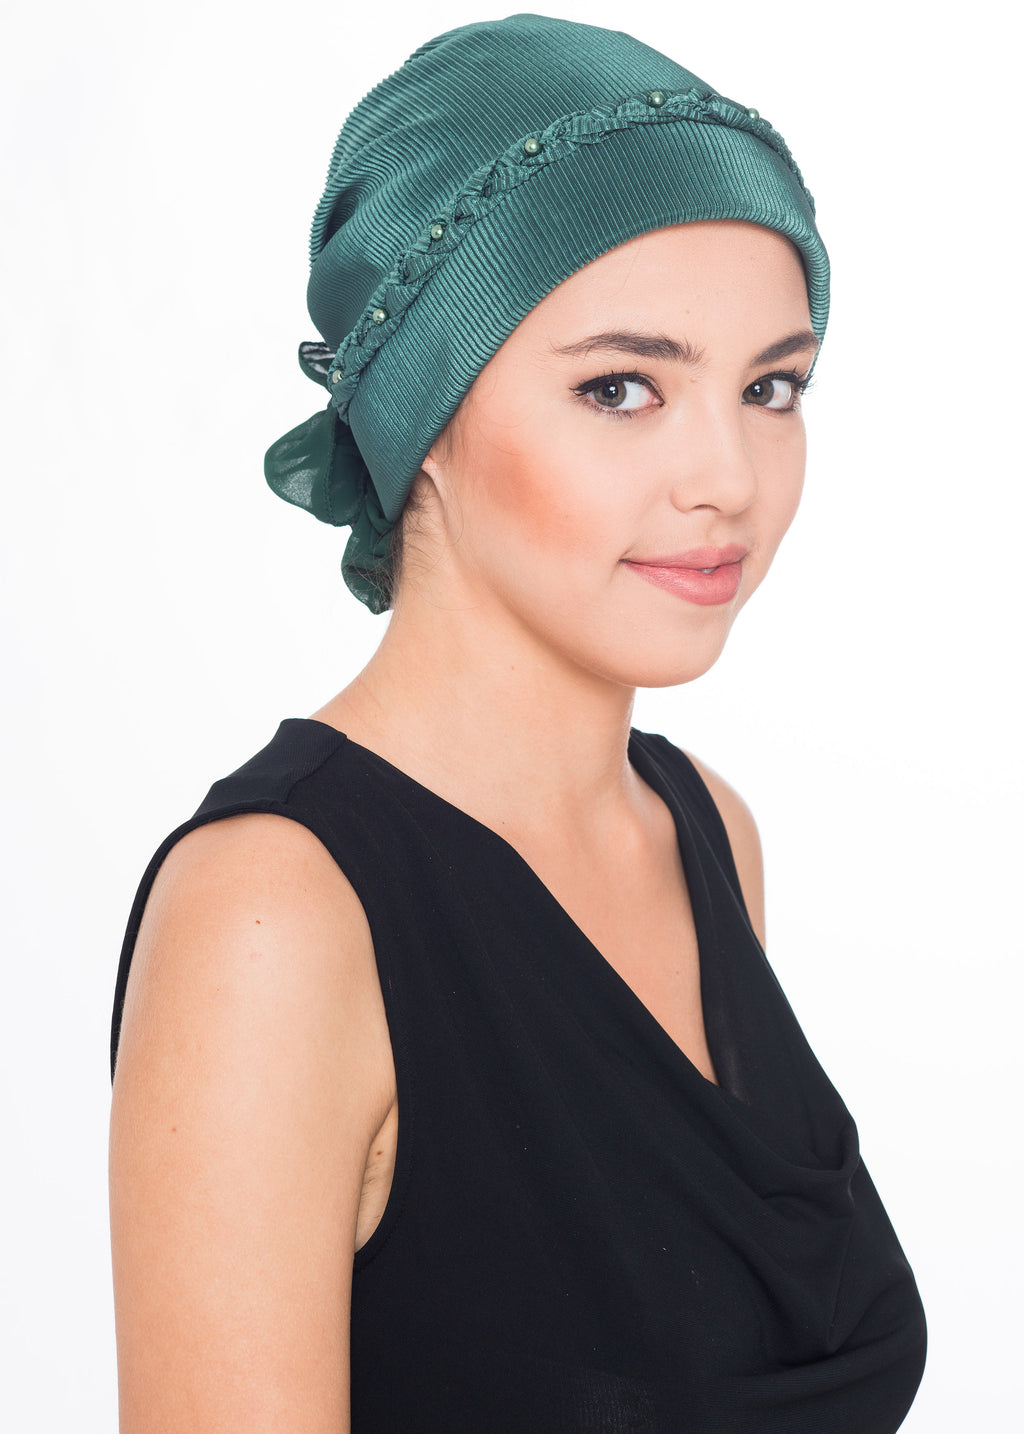 Geflochtene Kopfbedeckung - Grün (Exklusiv)